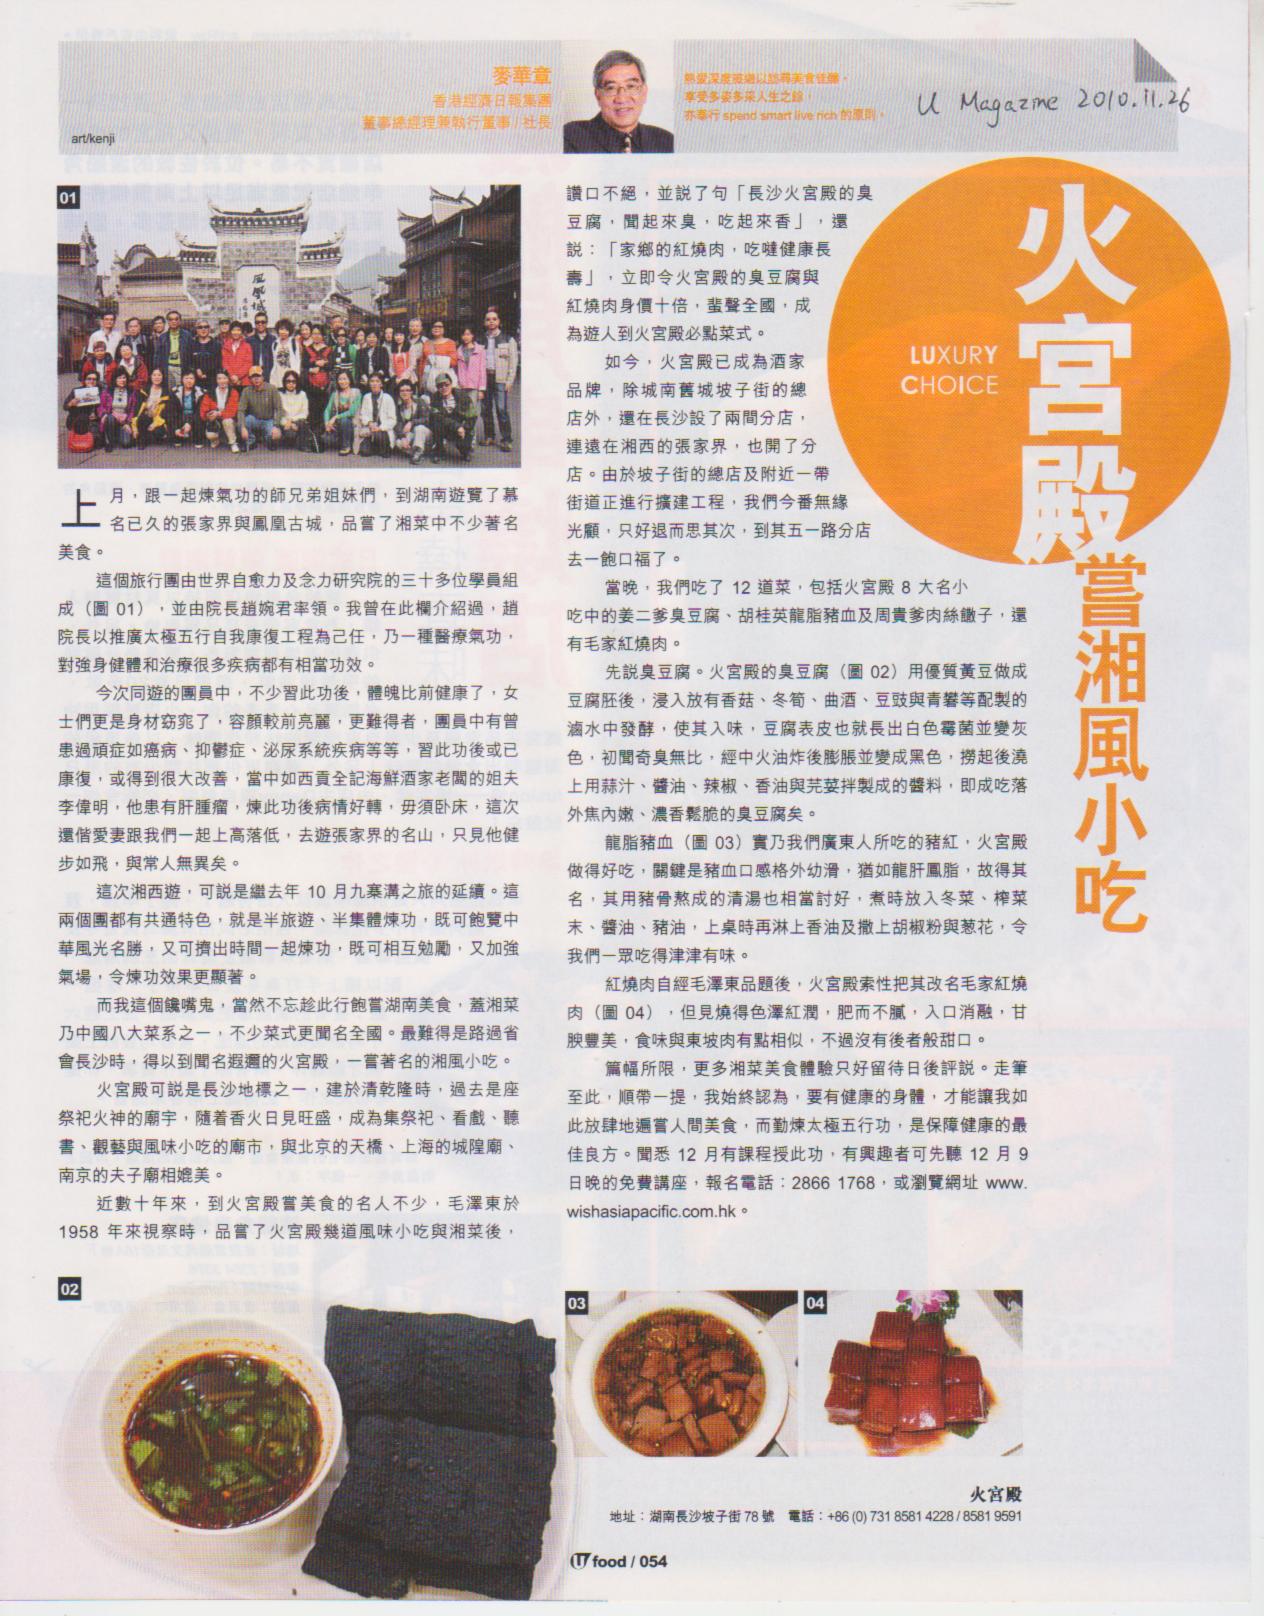 U Magazine︰2010年11月26日 (火宮殿嘗 湘風小吃)